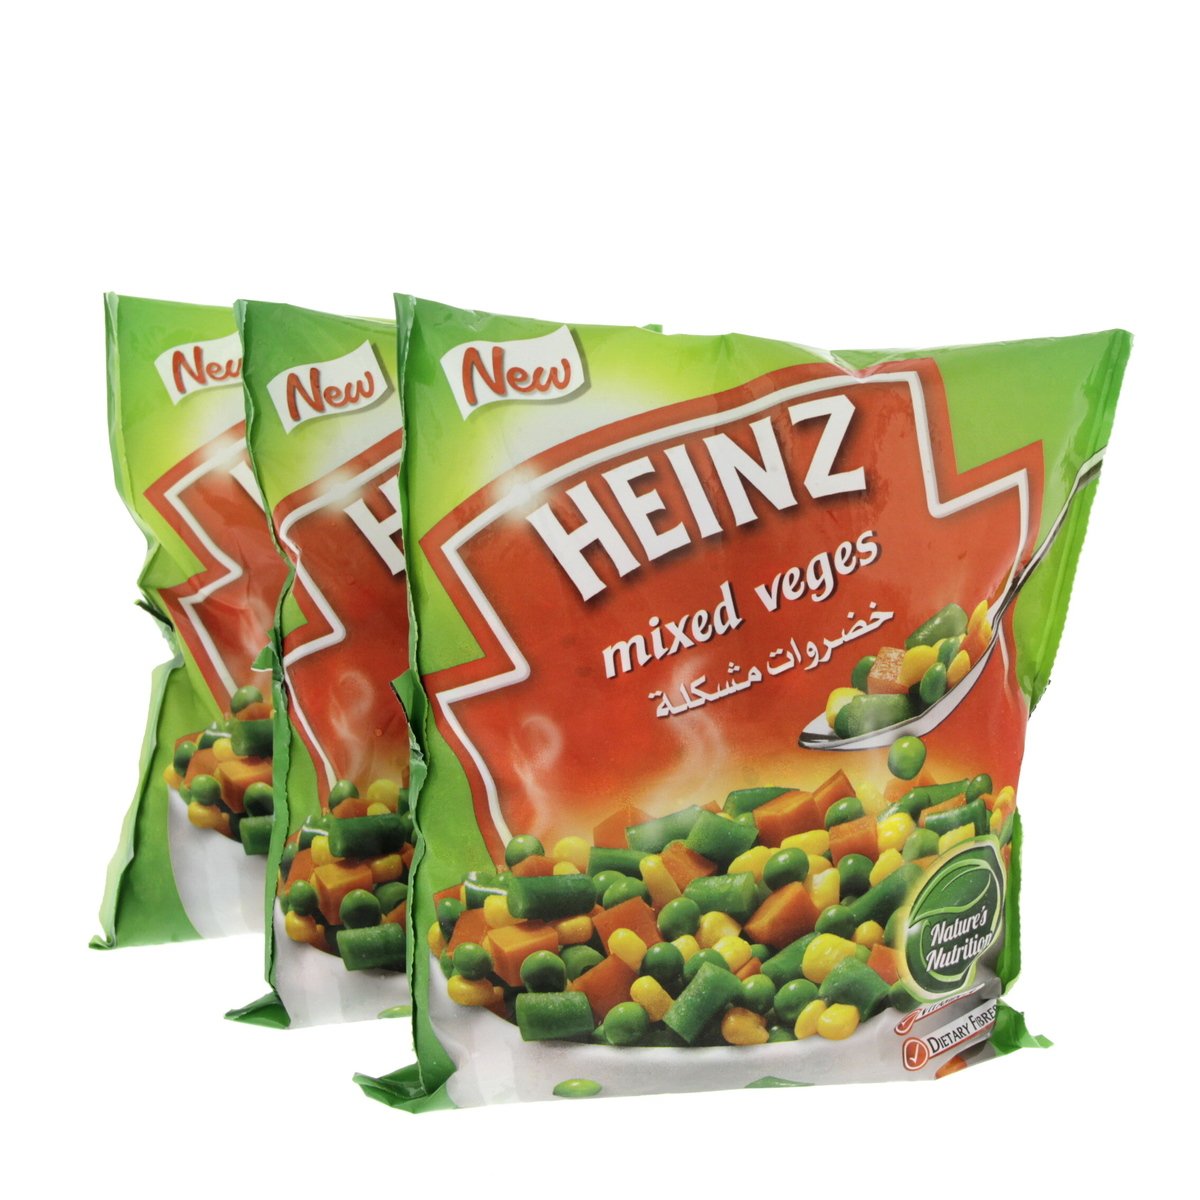 Heinz Mixed Veges 3 x 450 g